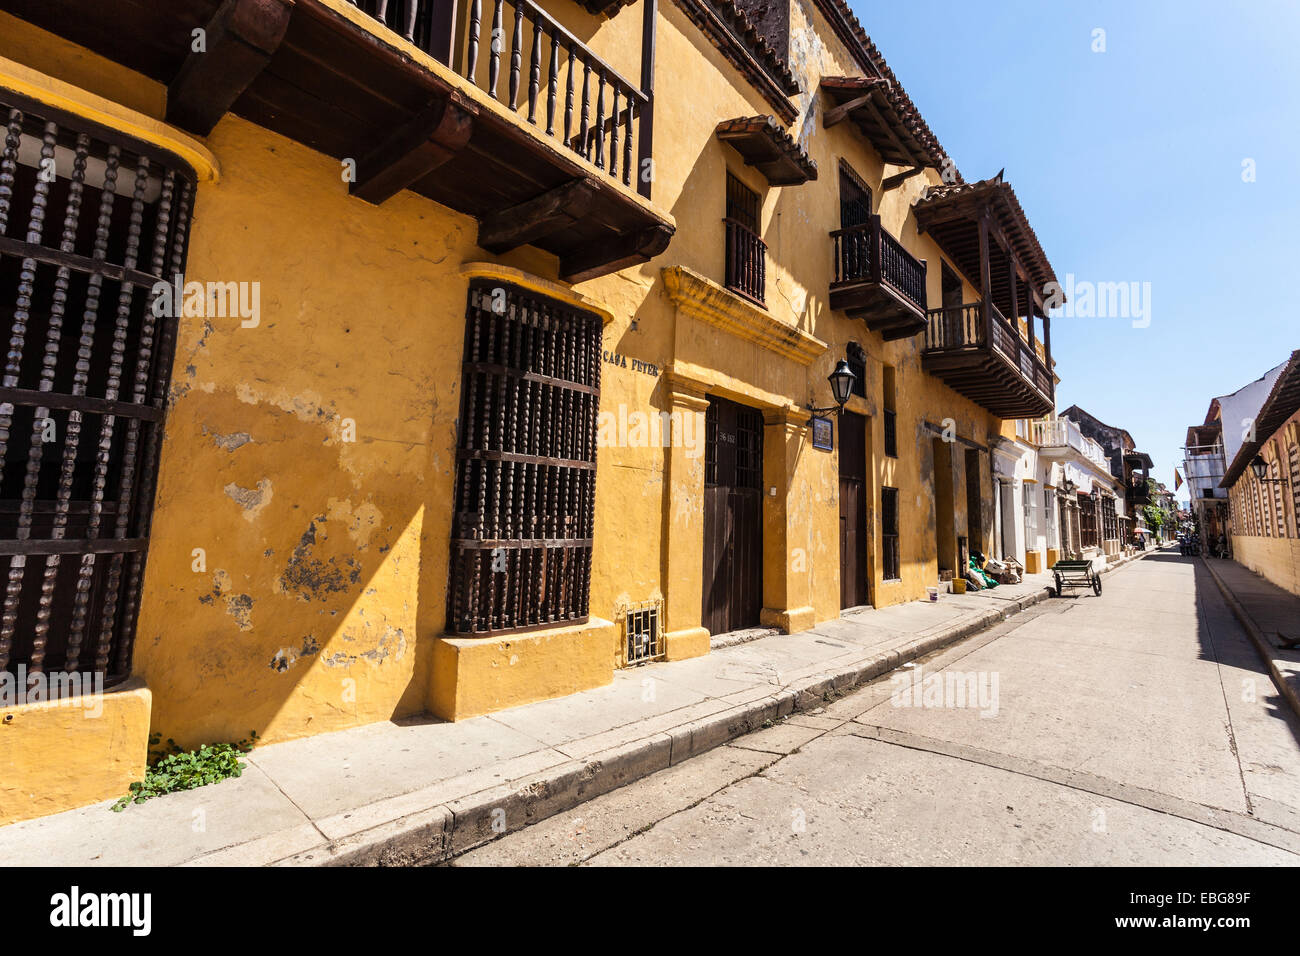 L'architecture coloniale espagnole rangée de maisons, Cartagena de Indias, Colombie. Banque D'Images